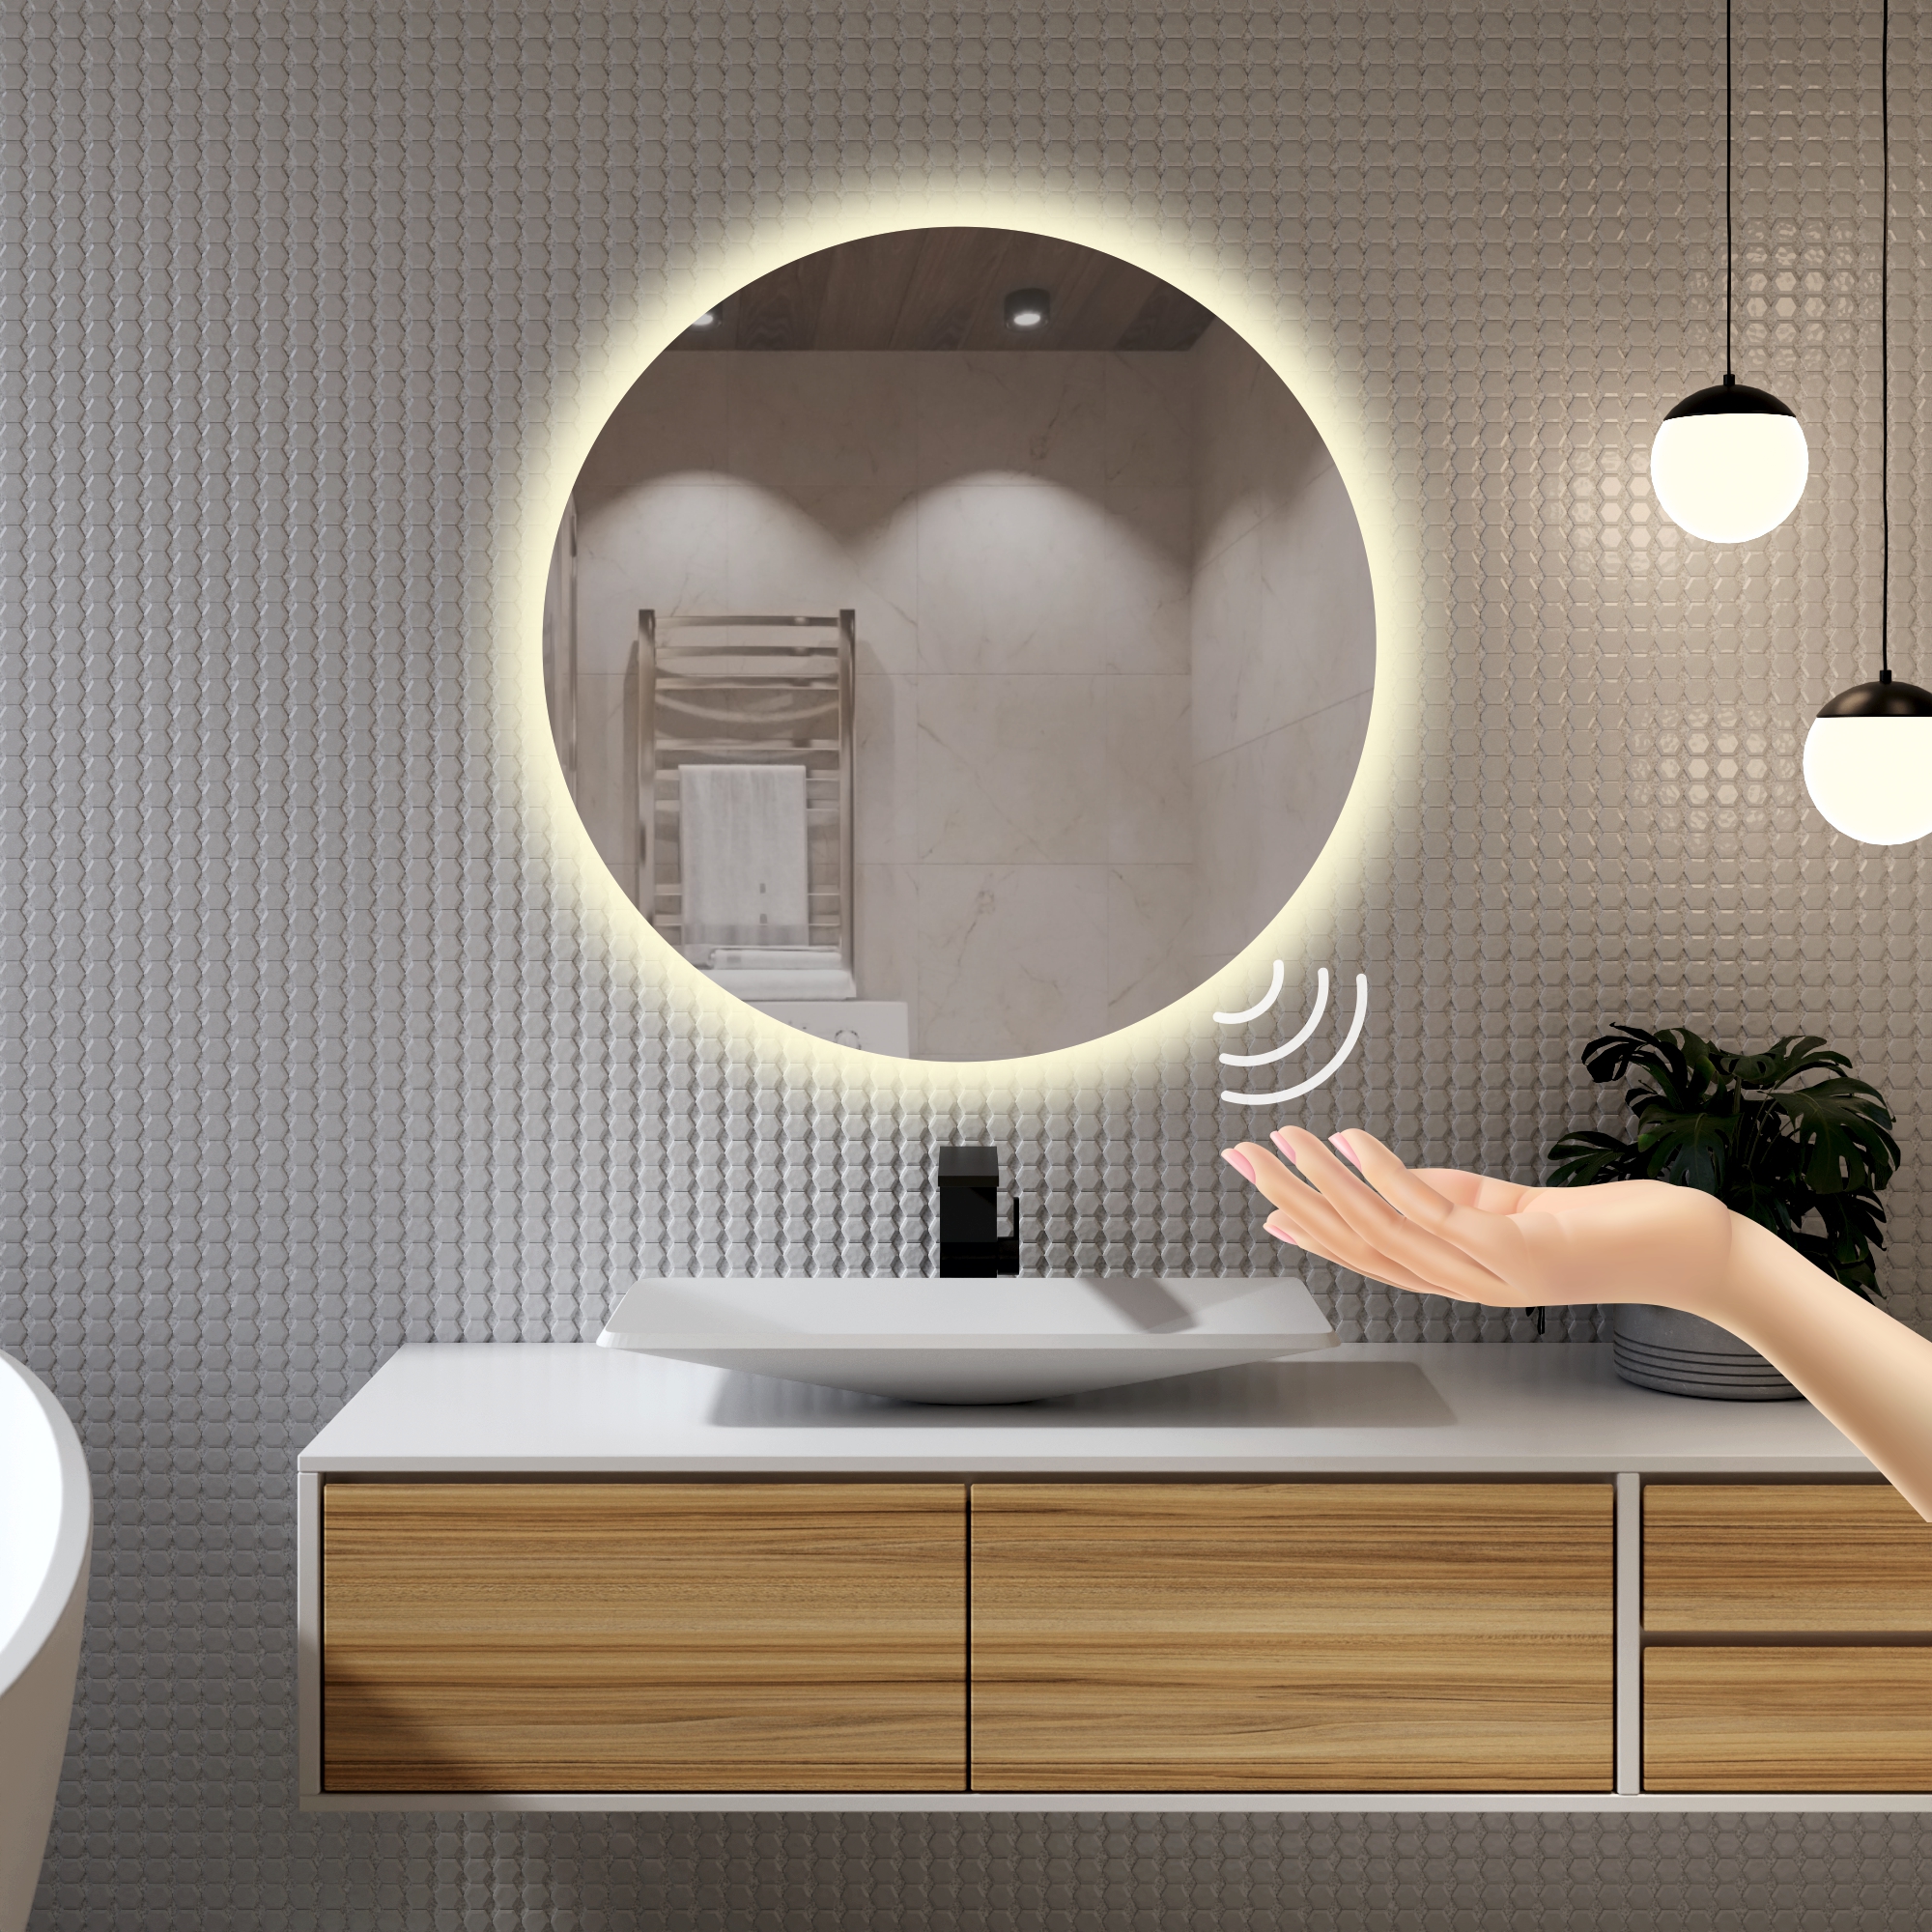 Зеркало для ванной Alfa Mirrors с дневной подсветкой 4200К круглое 70см, арт. Na-7Vzd